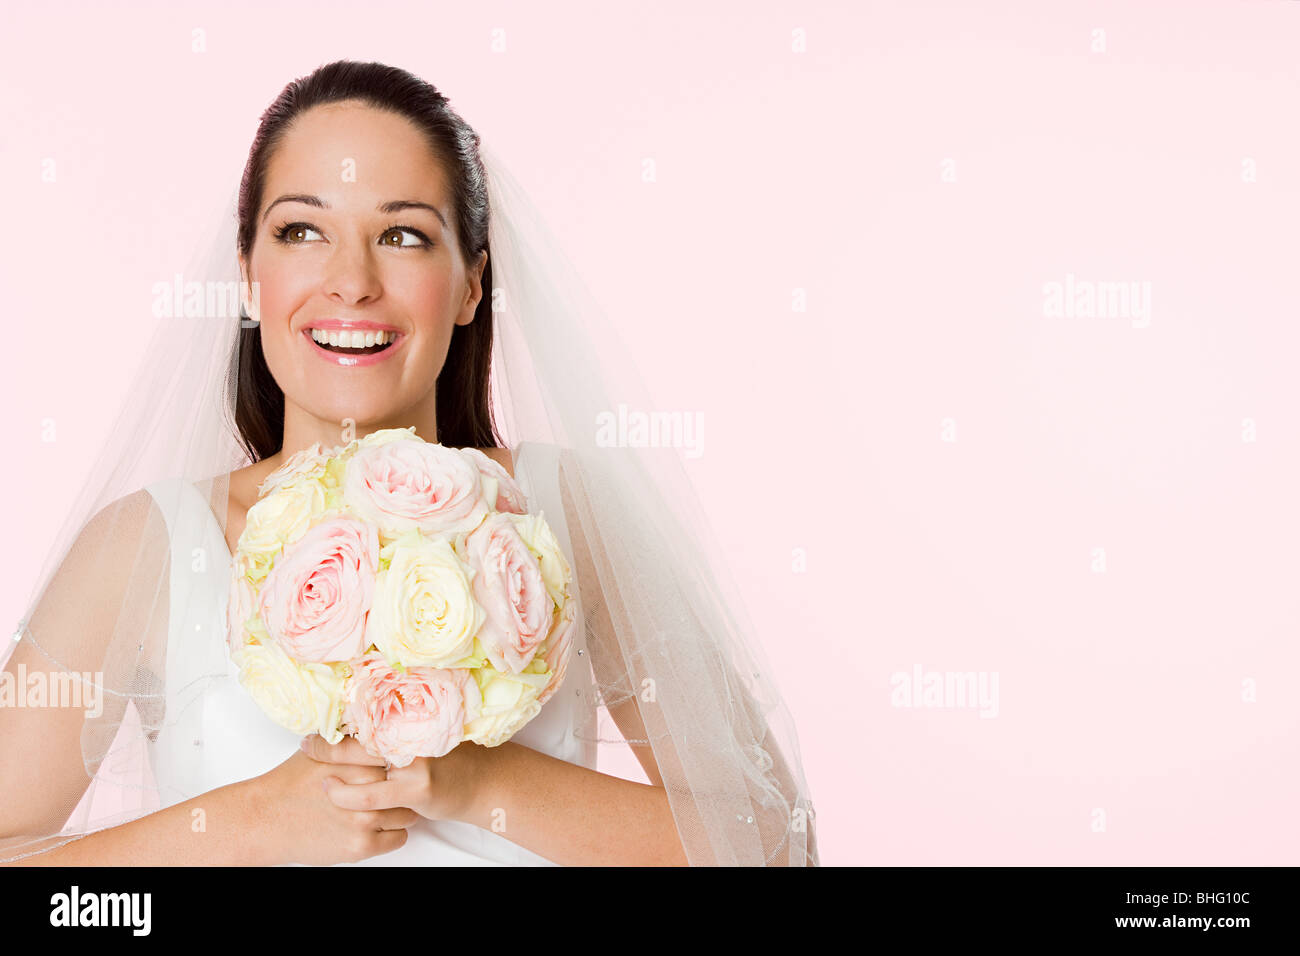 Smiling bride holding a bouquet Banque D'Images